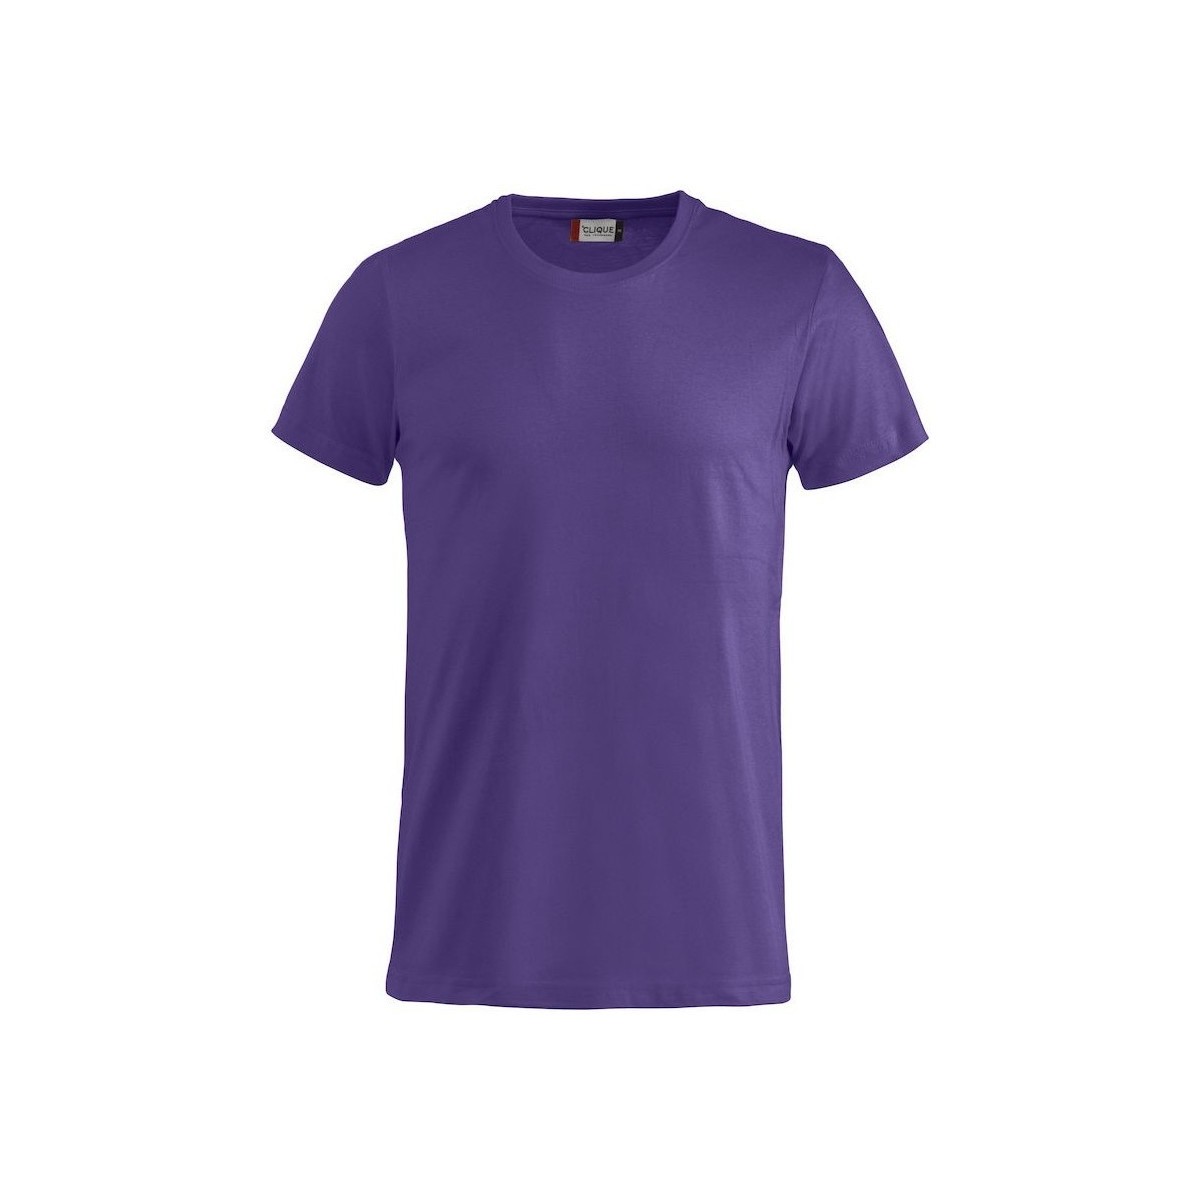 Vêtements Homme T-shirts manches longues C-Clique Basic Violet